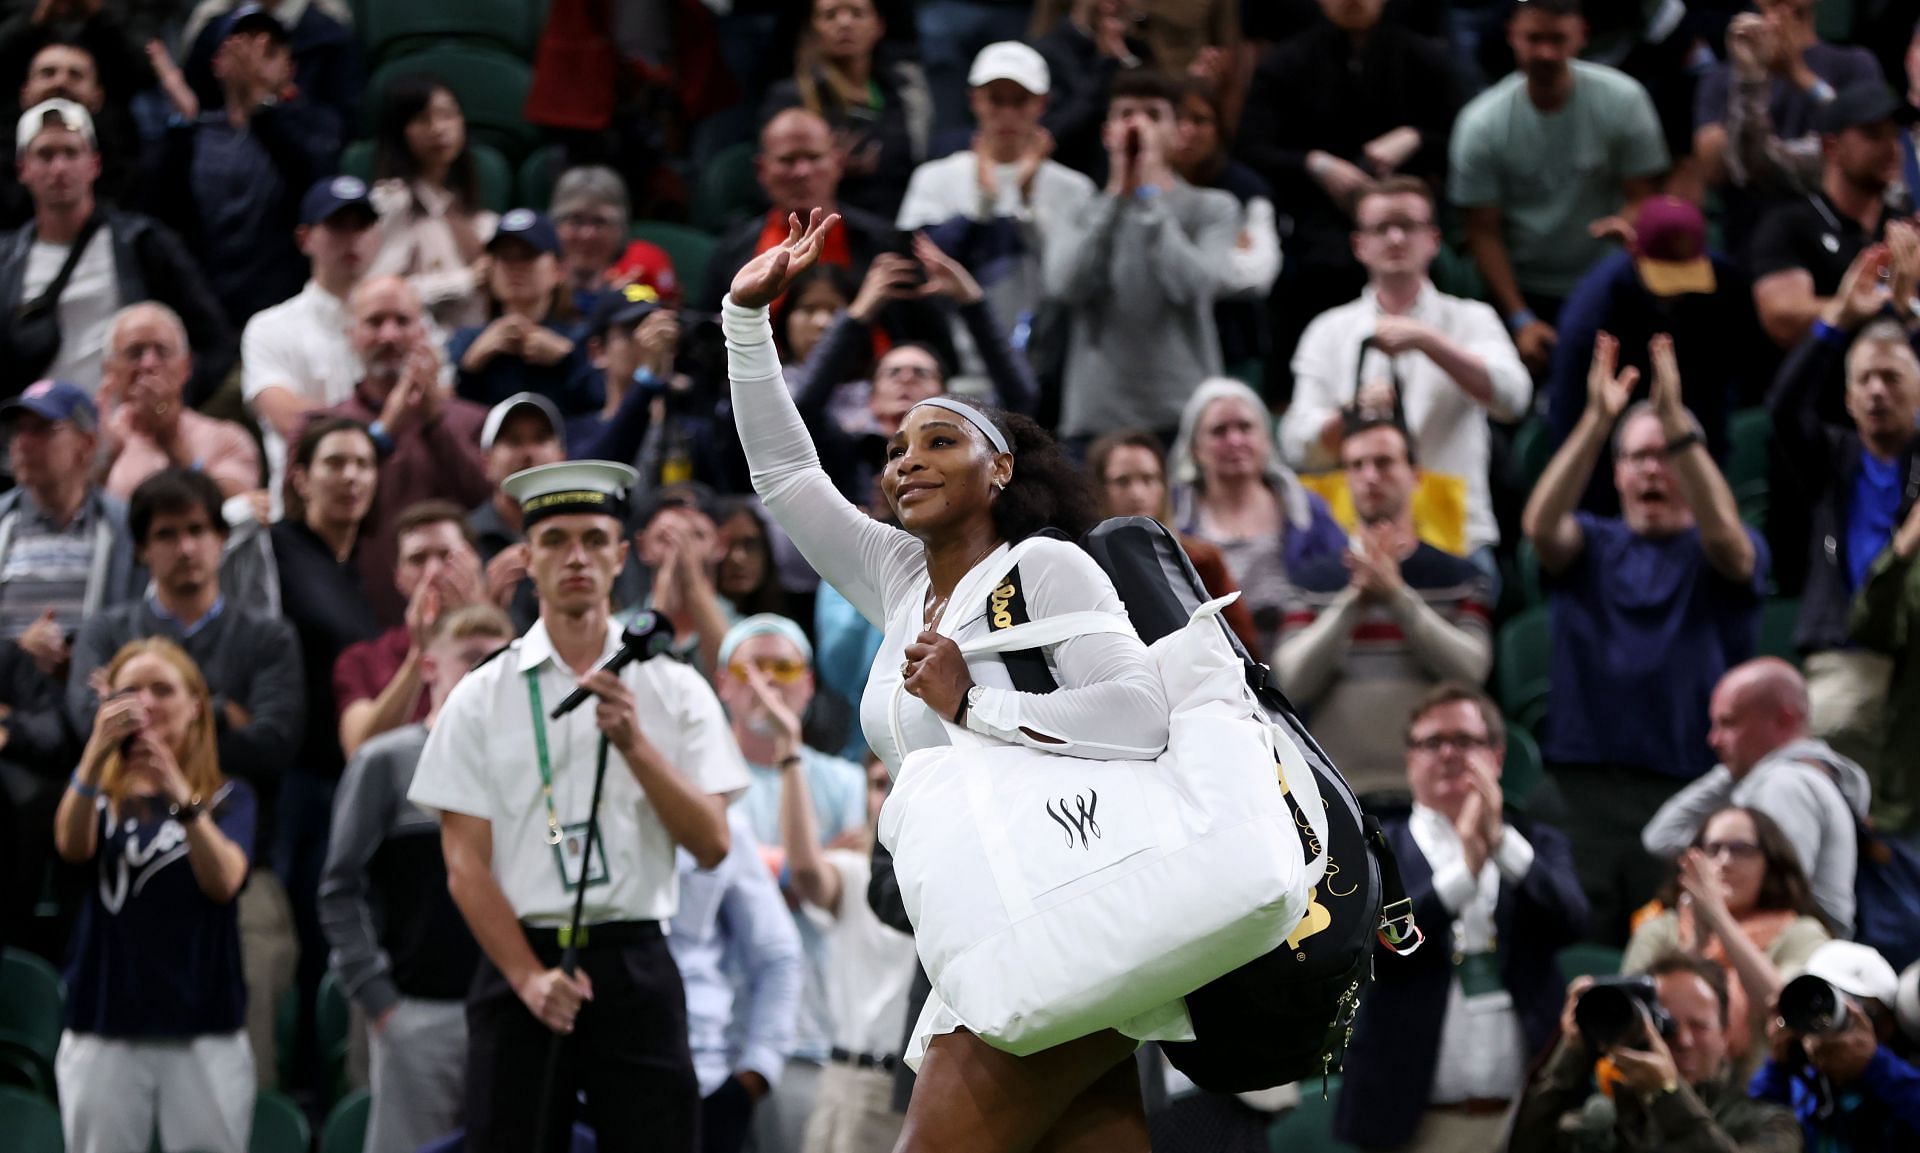 Serena Williams at the 2022 Wimbledon Championships